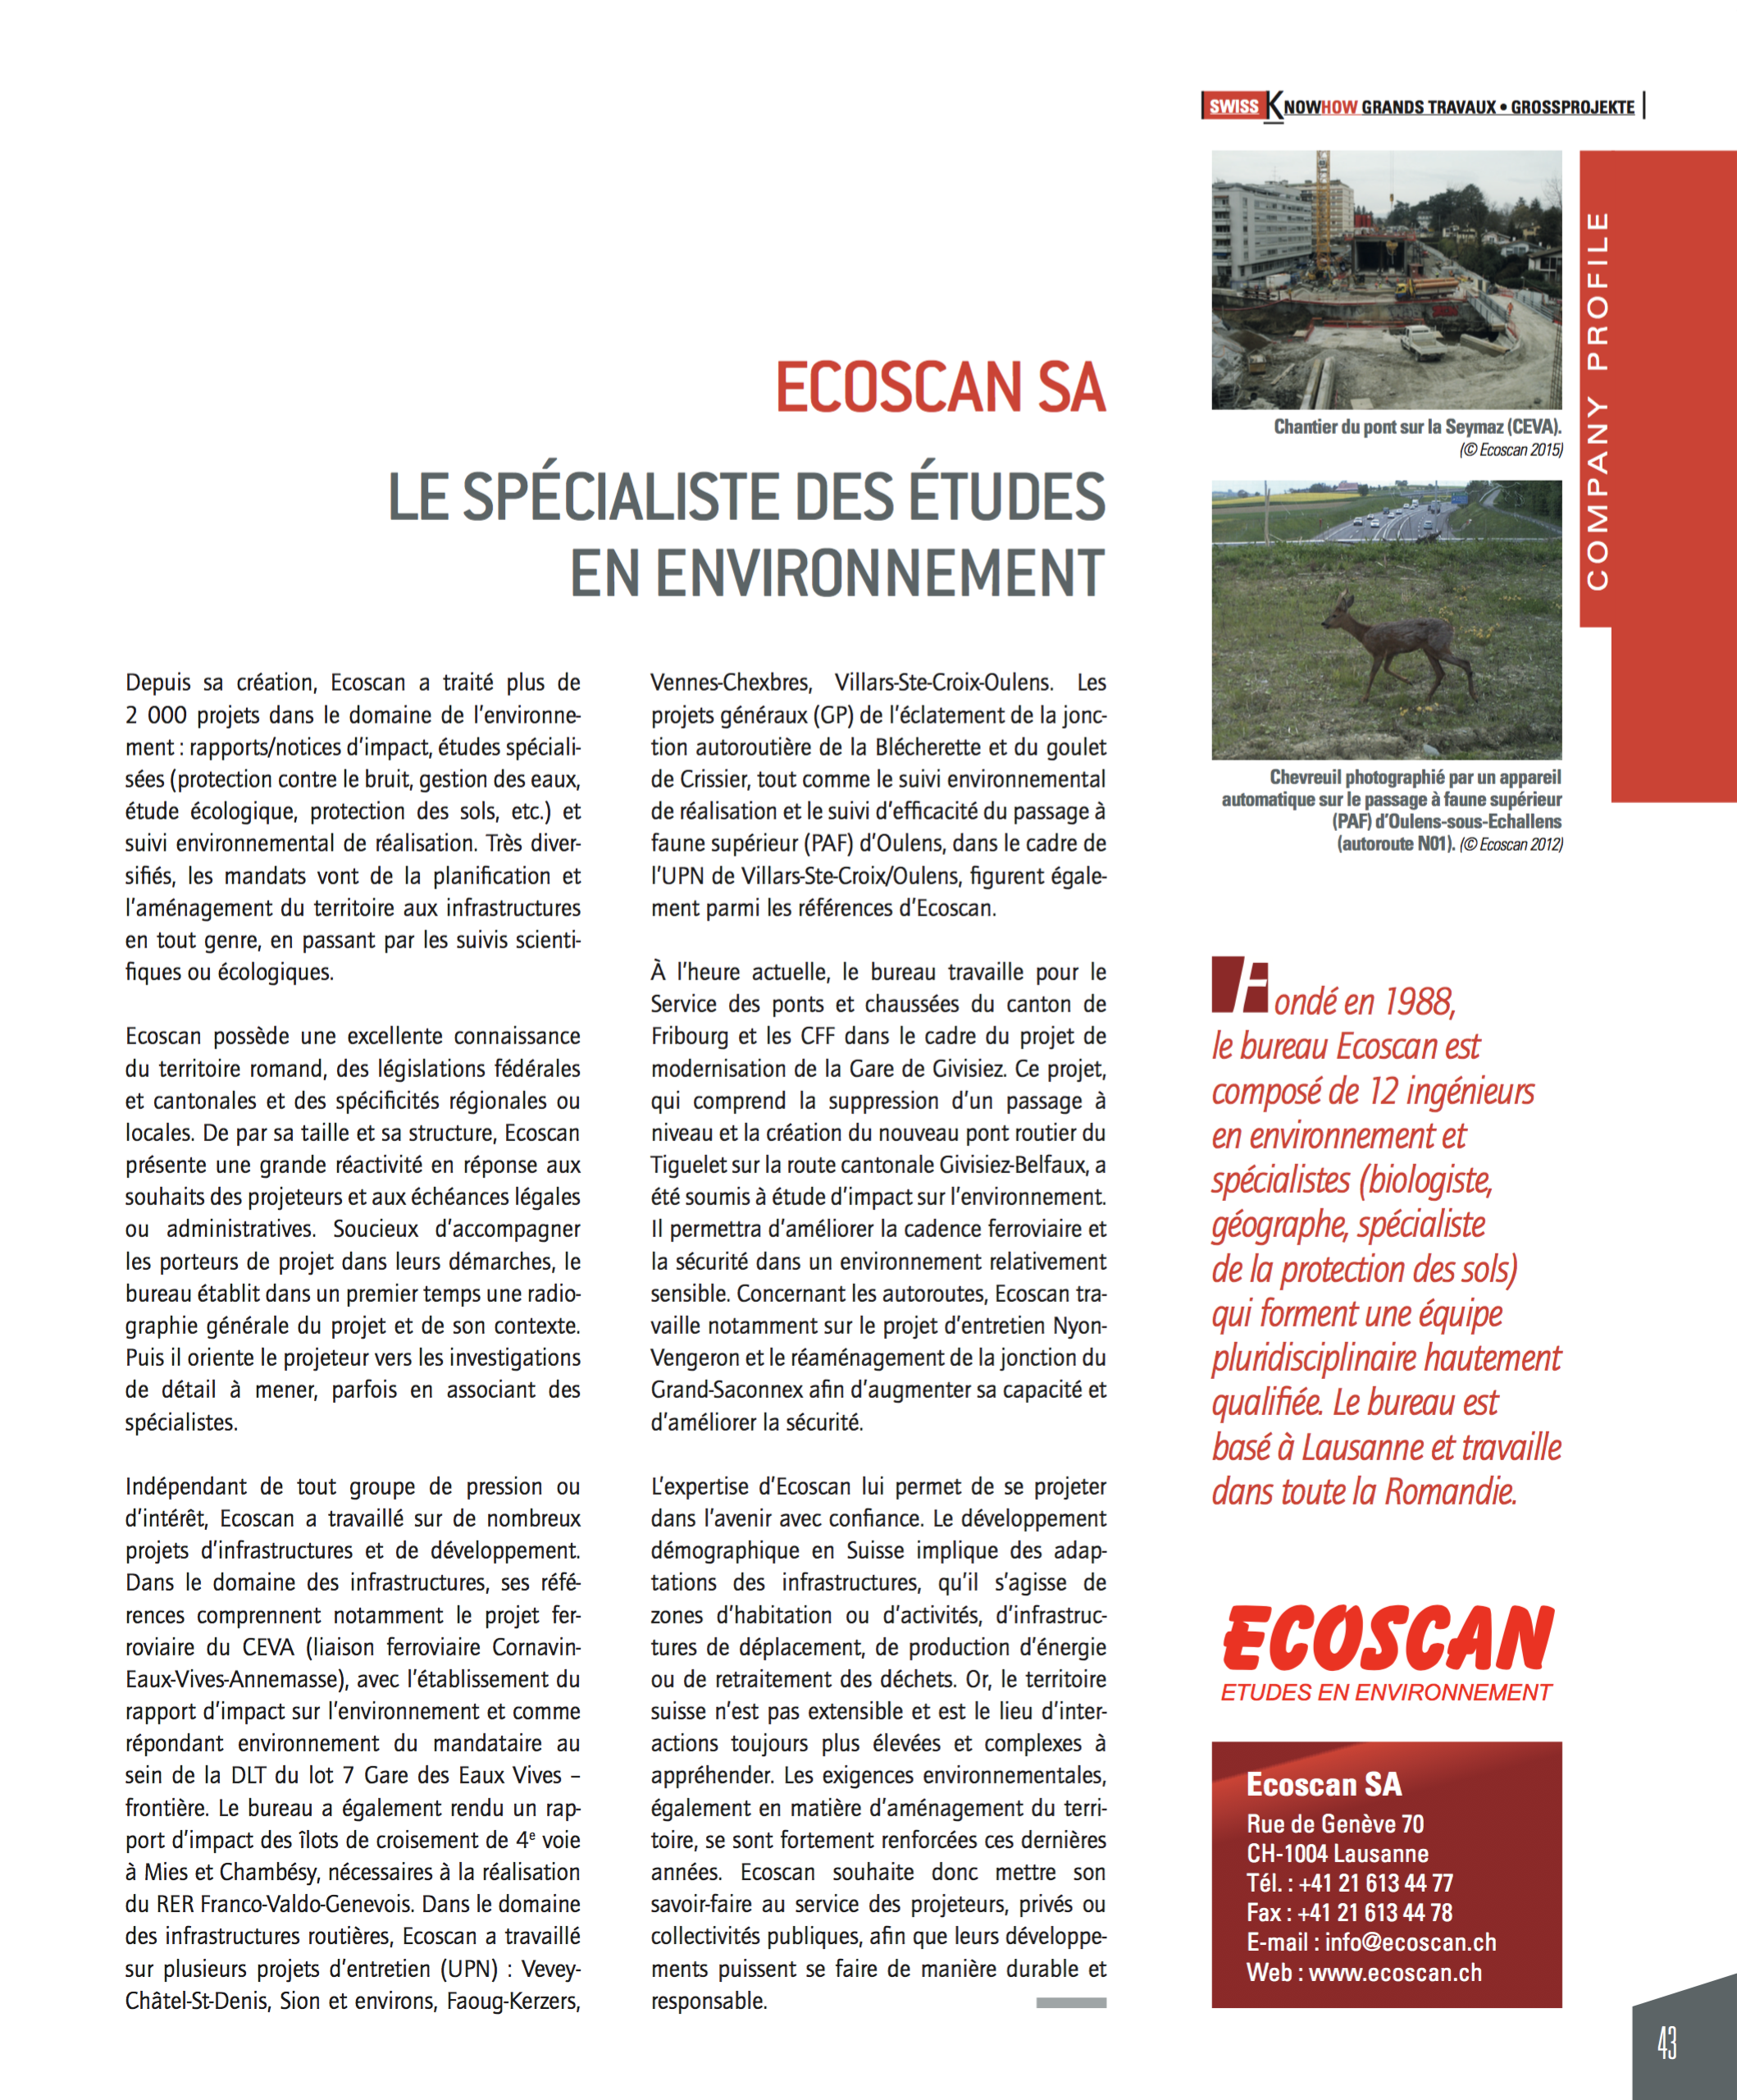 Ecoscan SA - Articles de presse